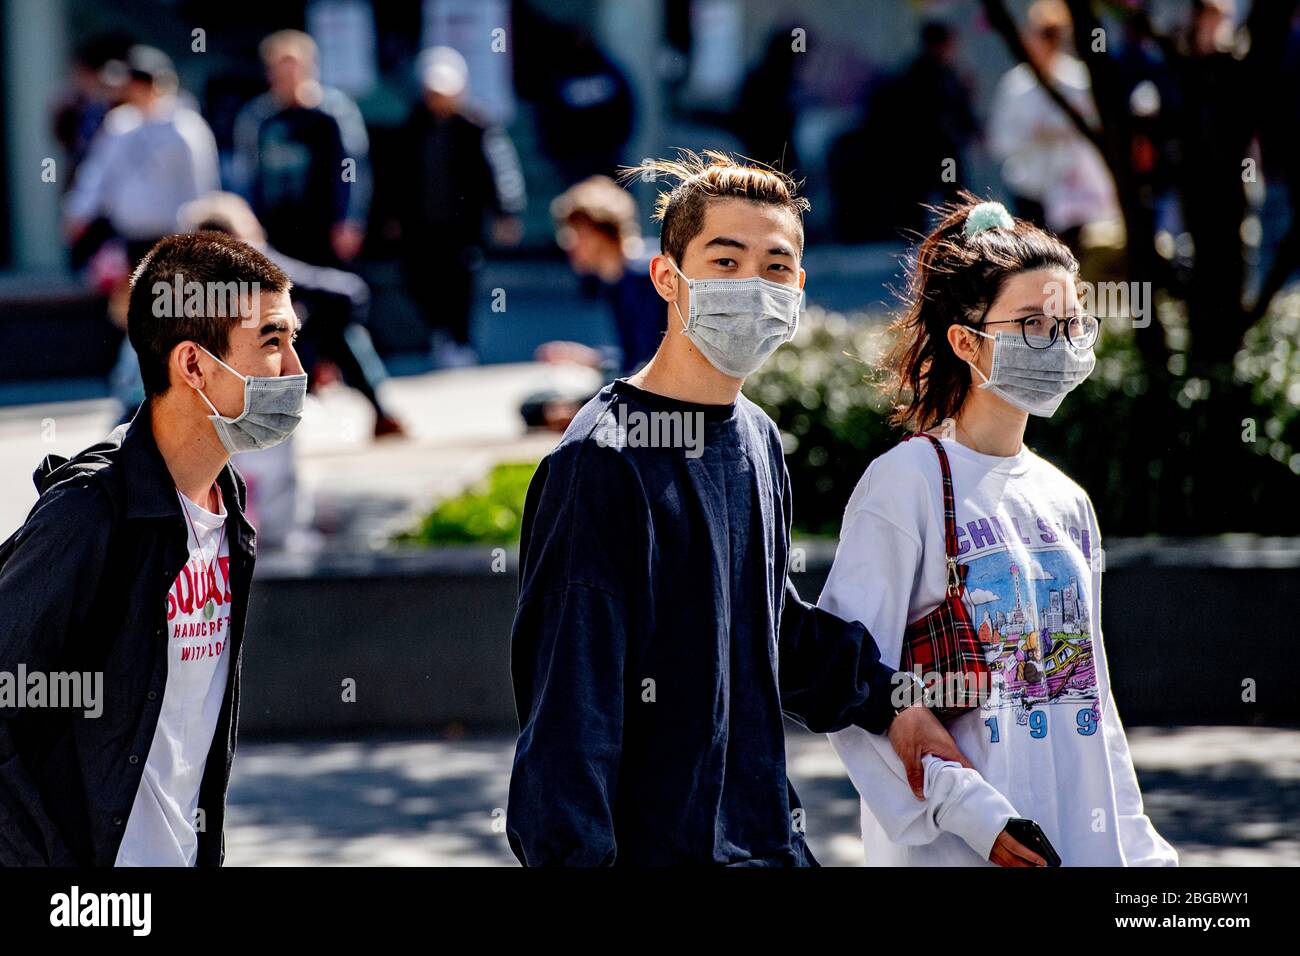 Le persone che indossano maschere facciali come misura preventiva contro la diffusione del coronavirus a piedi sulla strada.indossare maschere facciali è diventato popolare perché è una delle misure preventive più applicate contro la malattia del covid-19. Foto Stock